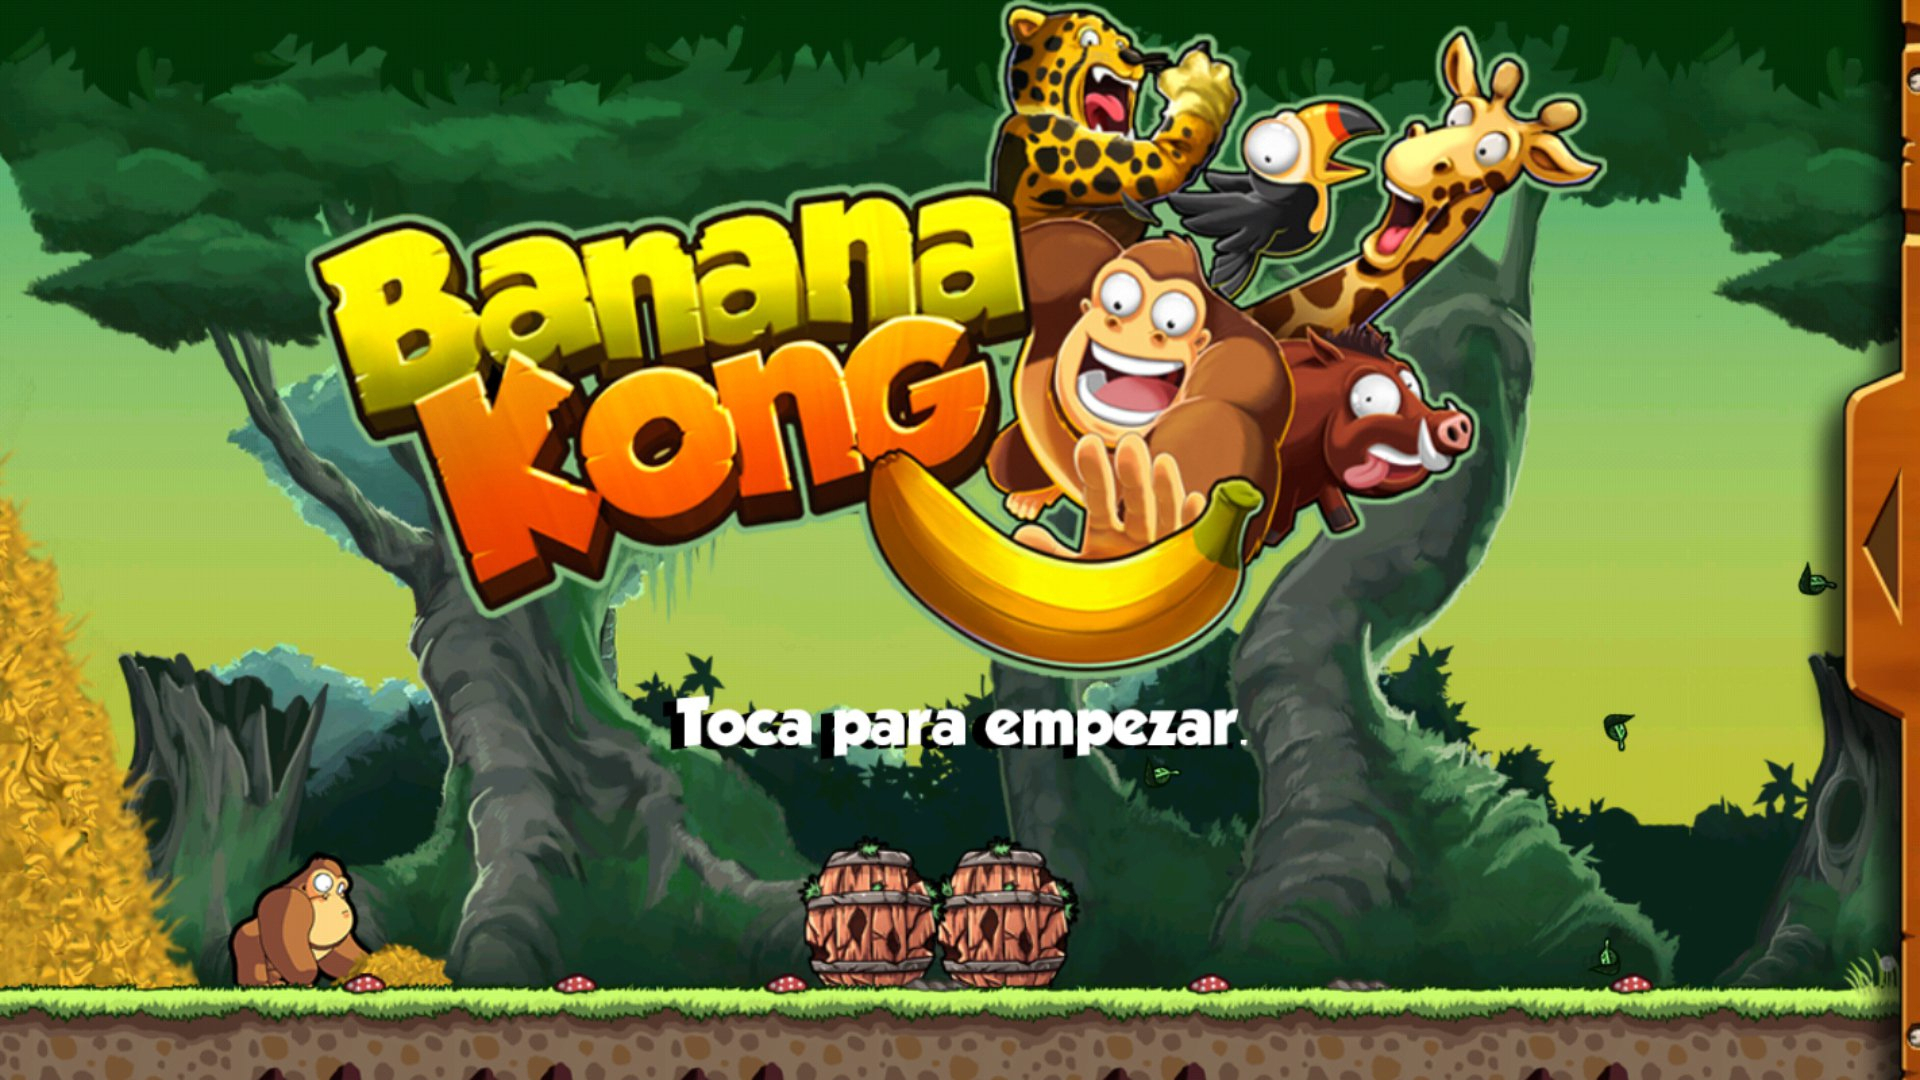 Banana Kong 1.9.6.6 - Télécharger Pour Android Apk tout Jeux Gratuit Android A Telecharger 